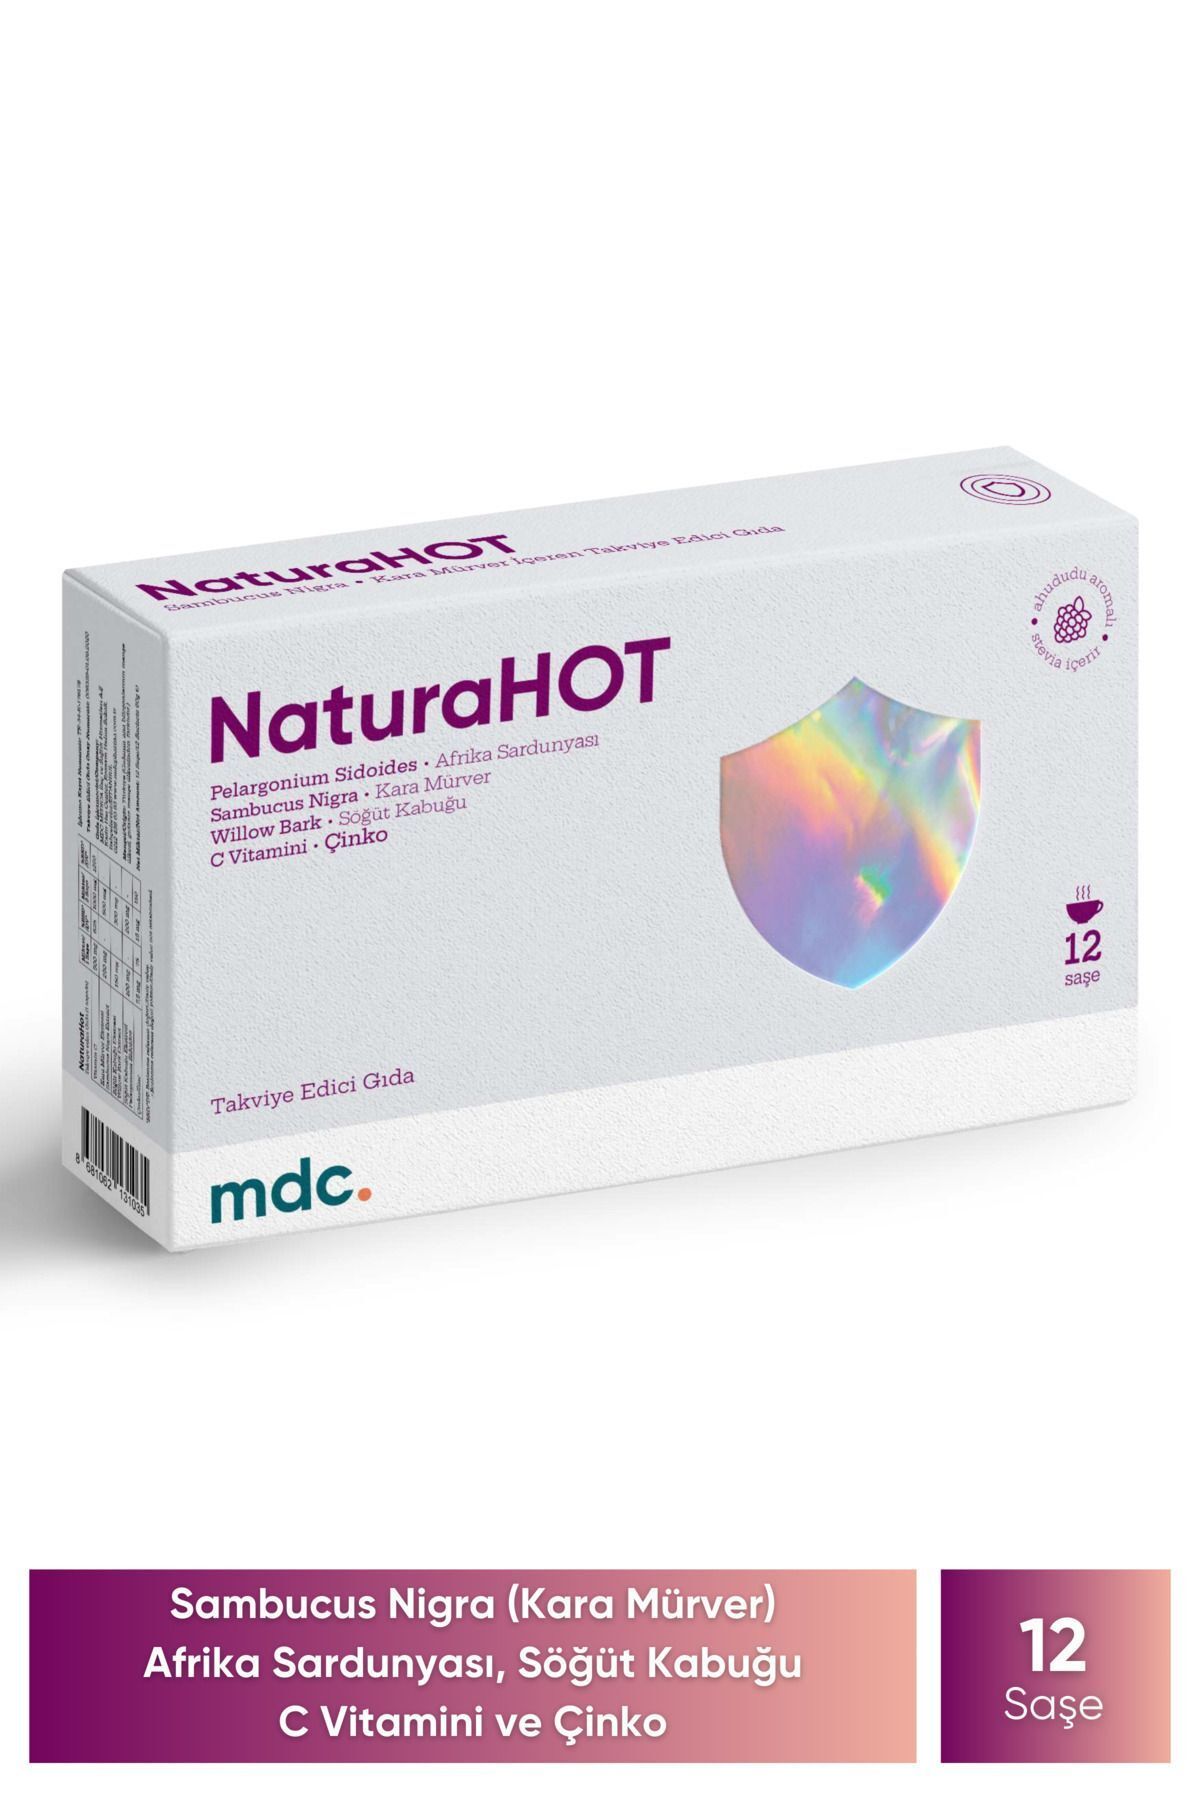 MDC Naturahot 12 Saşe (kara Mürver, Afrika Sardunyası, C Vitamini)